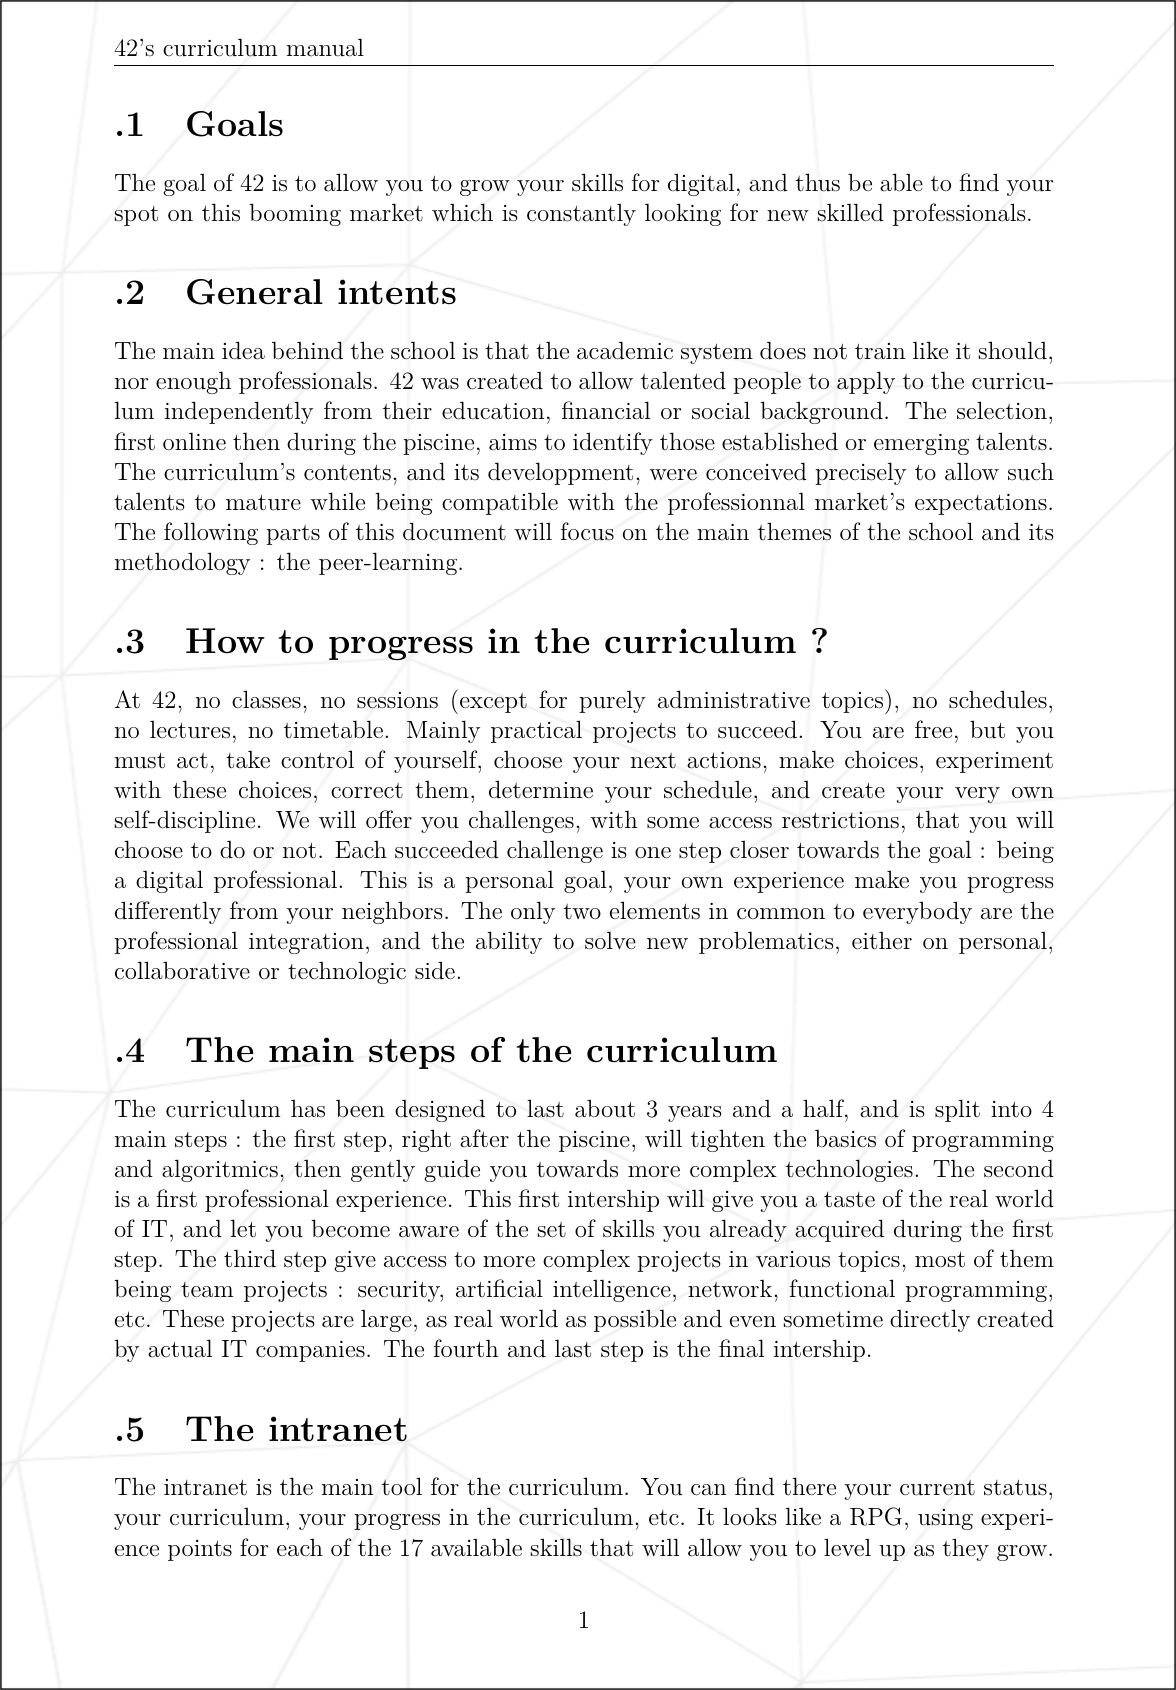 Page 2 of 6 - Cursus Manual.en